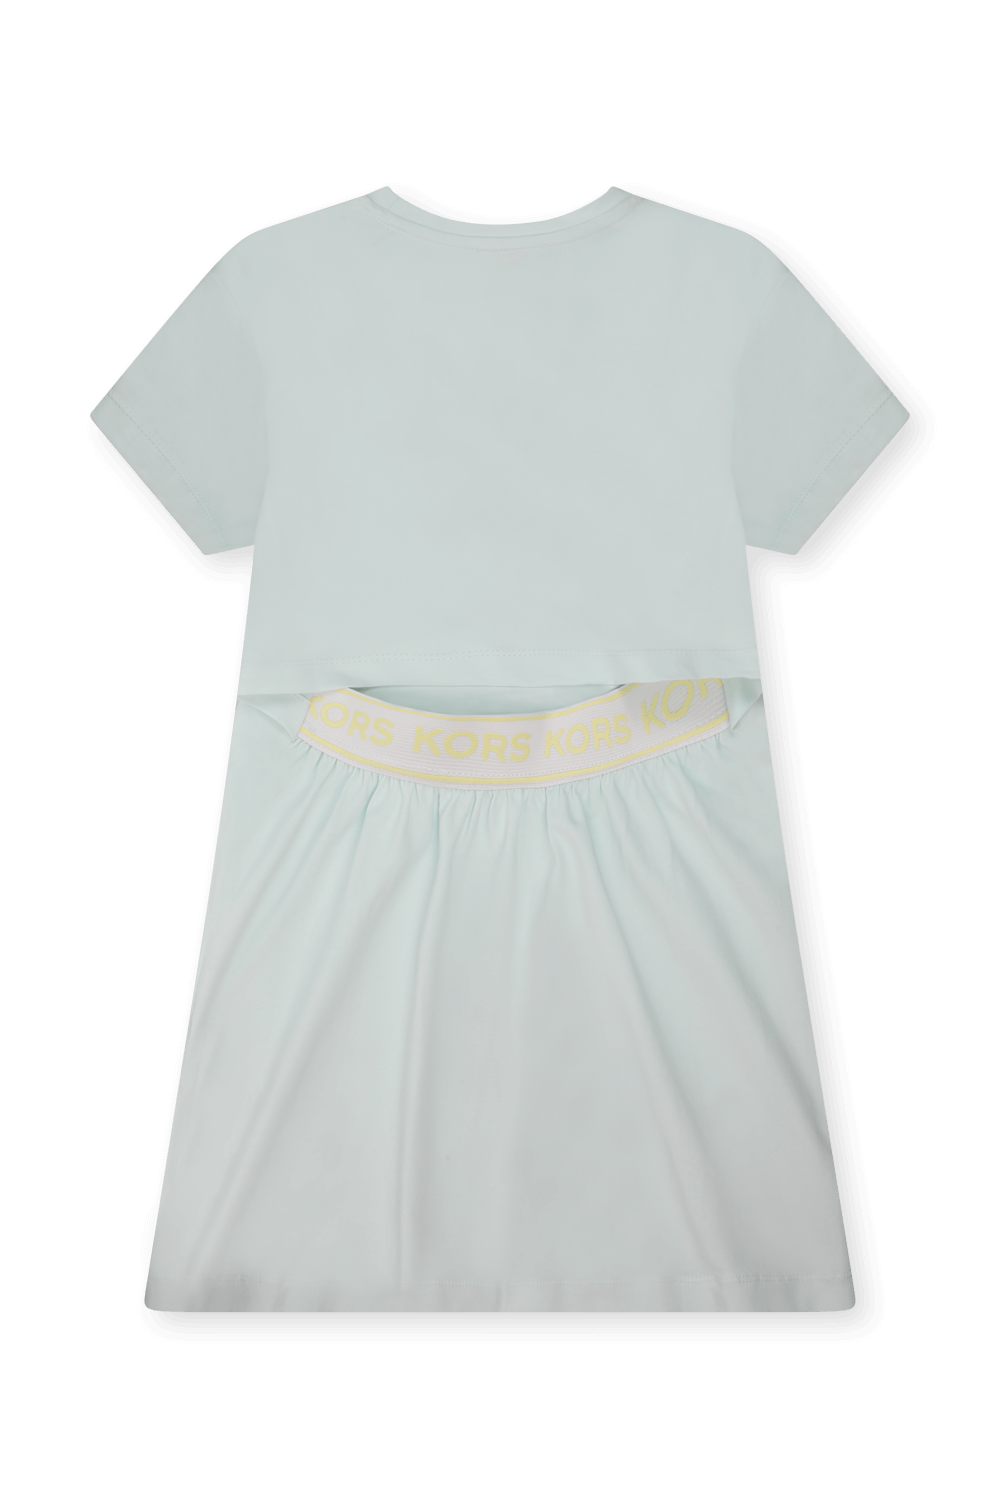 שמלת טי עם גב מעוצב - גילאי 2-5 MICHAEL KORS KIDS